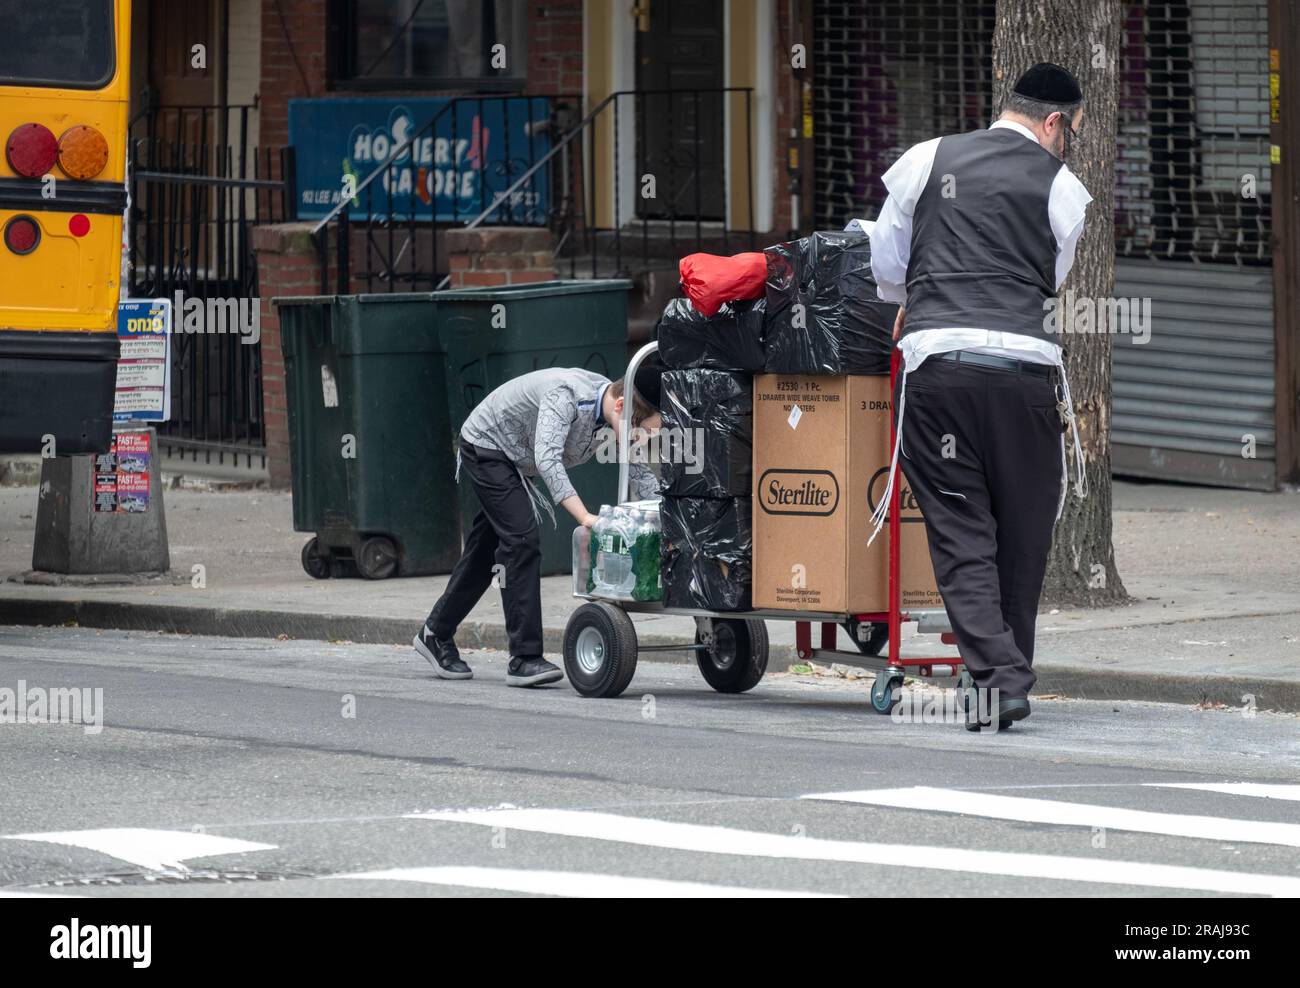 Un jeune garçon hassidique aide son père à déplacer des boîtes et des sacs d'un bus à leur domicile. Dans une rue animée de Brooklyn, New York. Banque D'Images